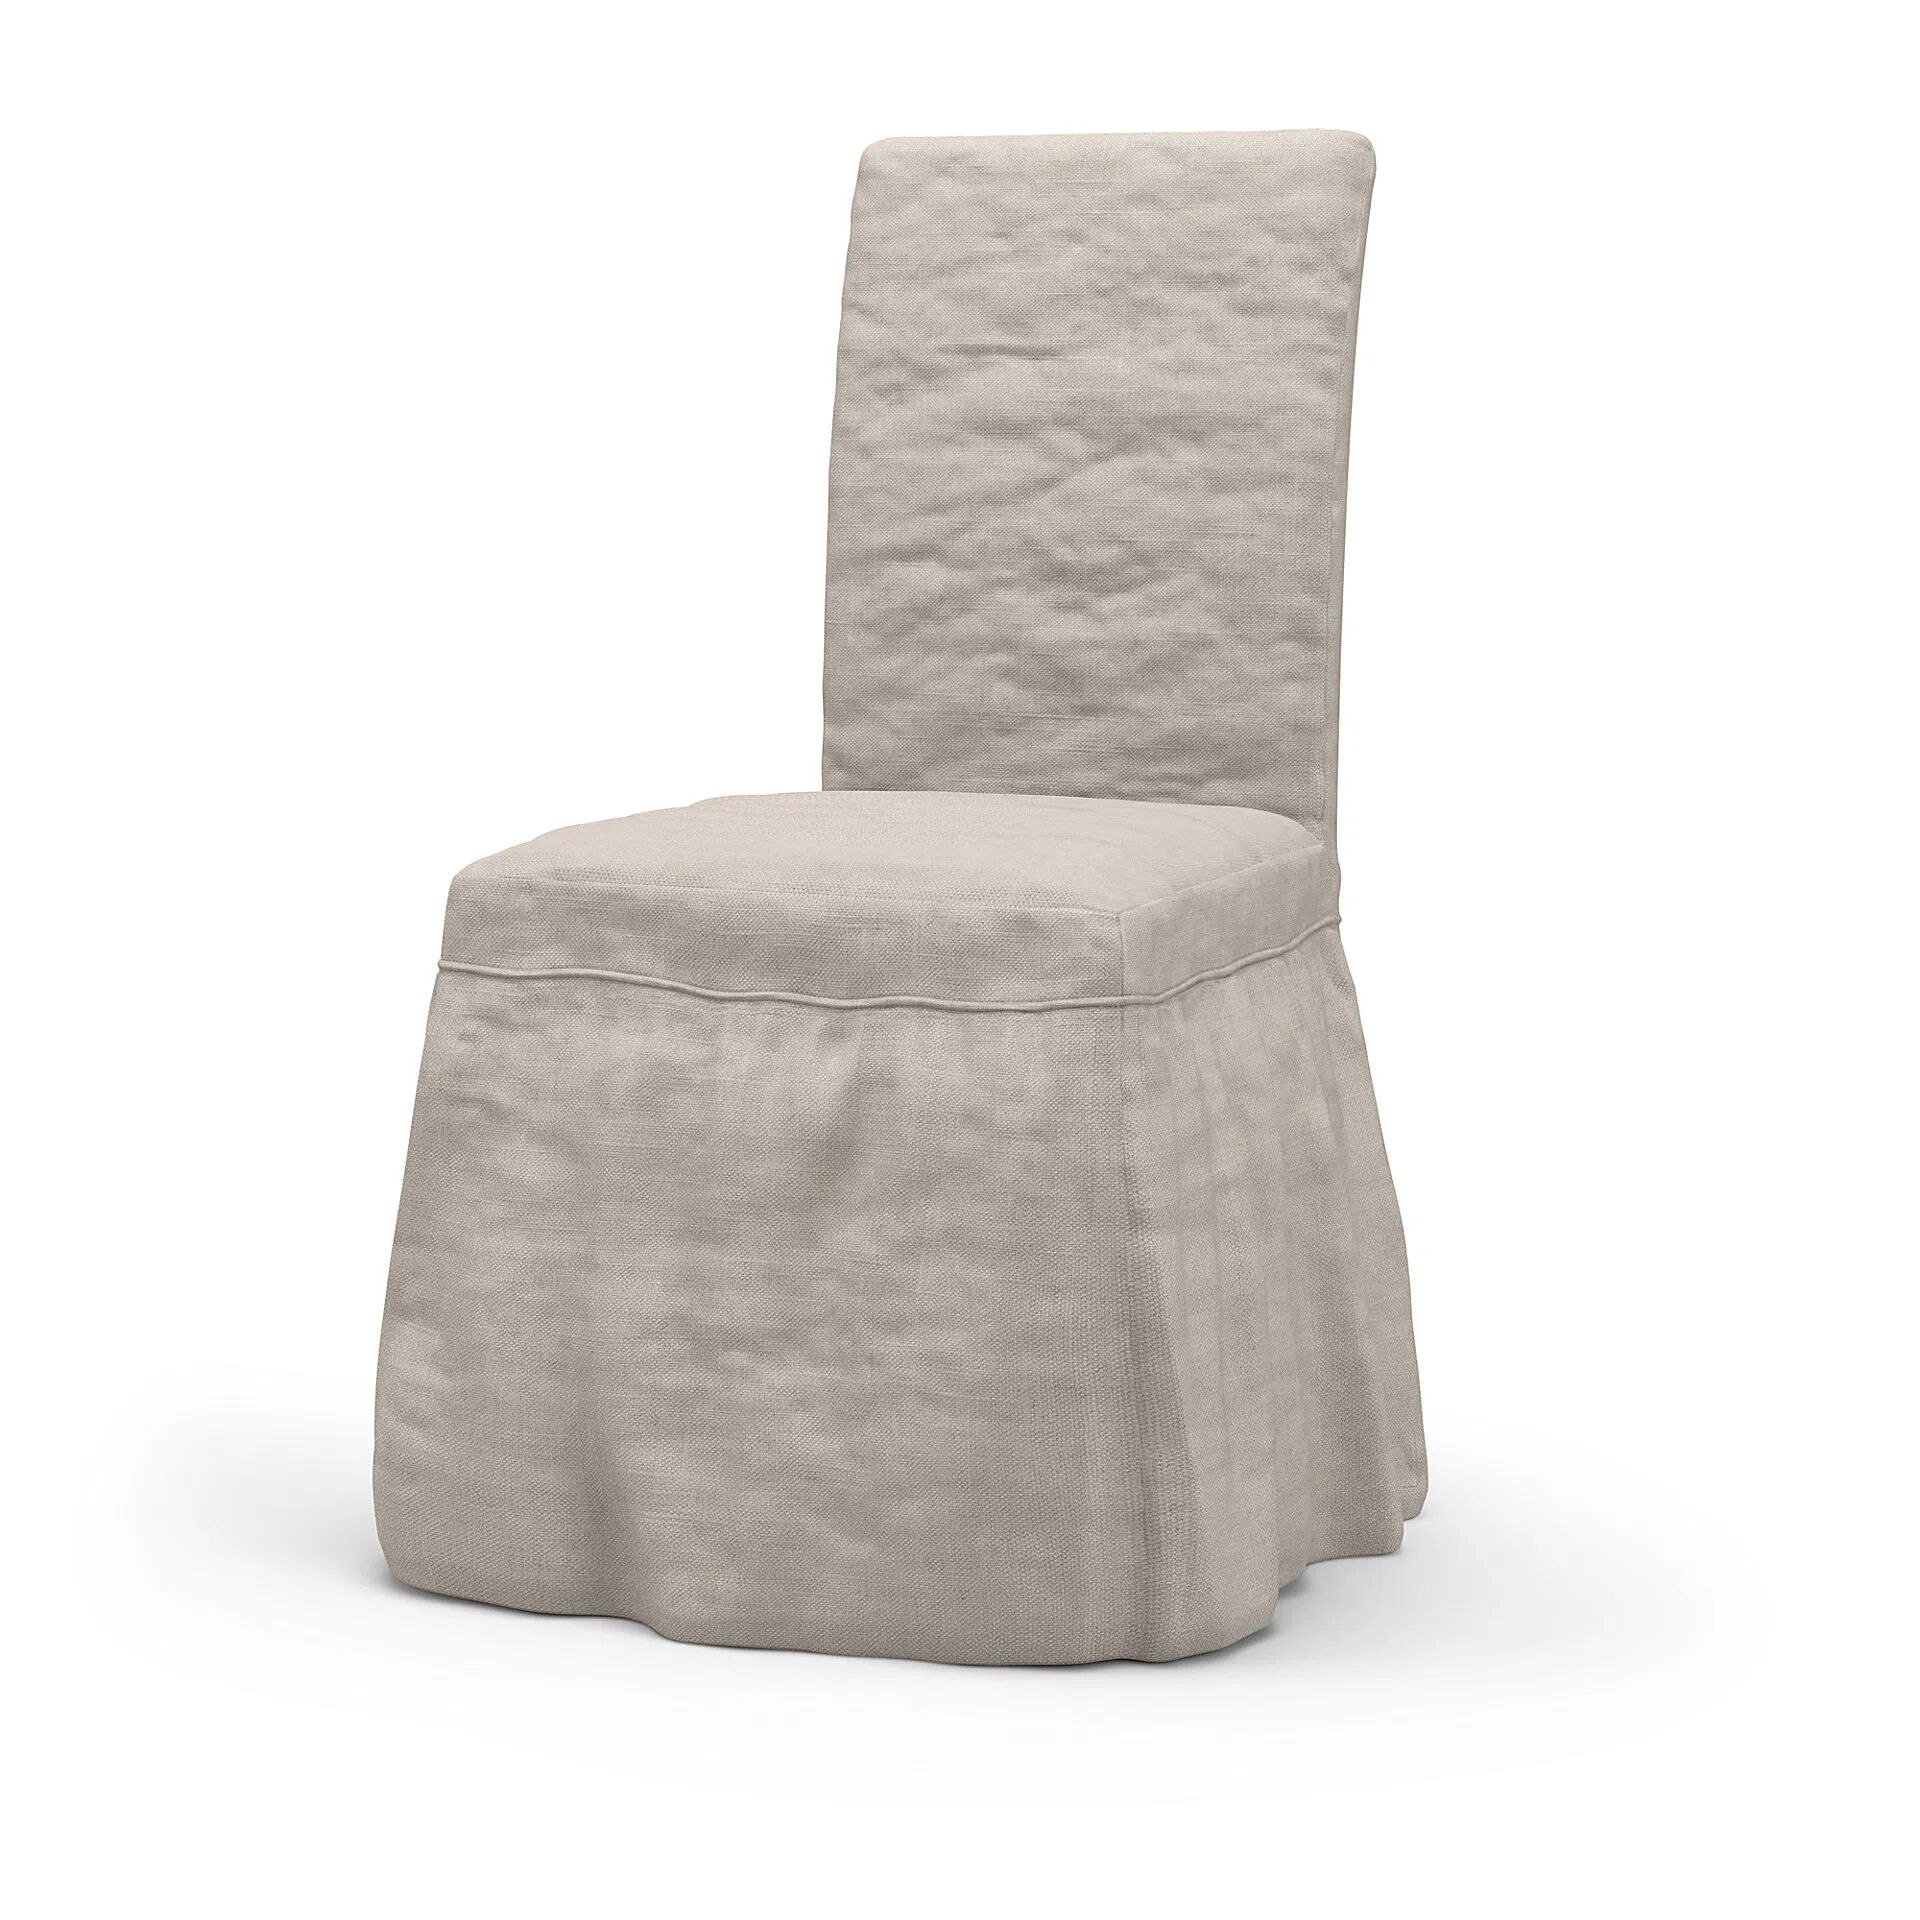 IKEA - Henriksdal Dining Chair Cover Long skirt with Ruffles (Standard model), Chalk, Linen - Bemz